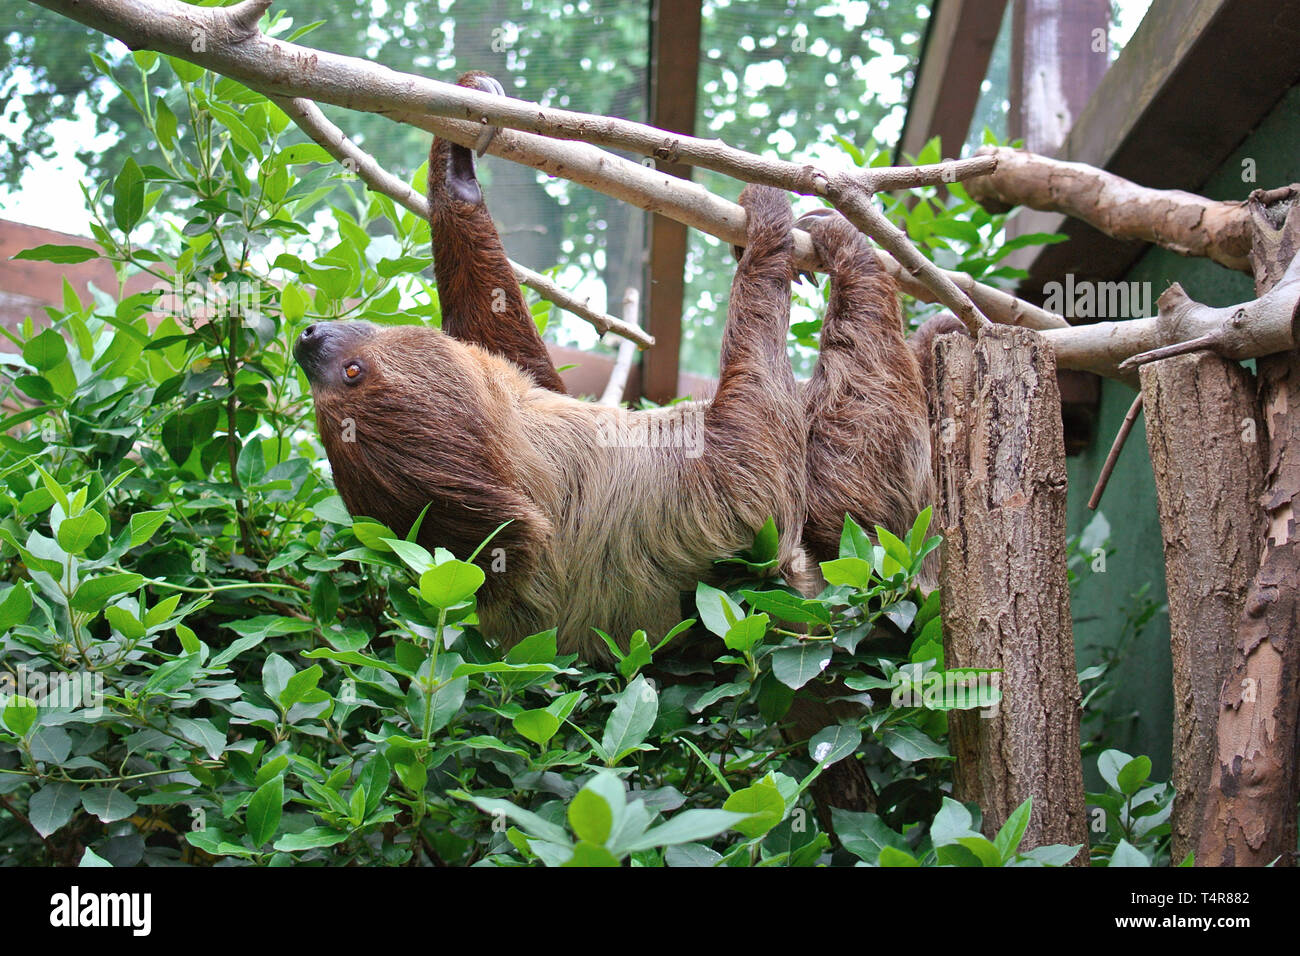 Choloepus Didactylus deux-toed Sloth l'escalade à l'envers sur la pendaison tree branch Banque D'Images